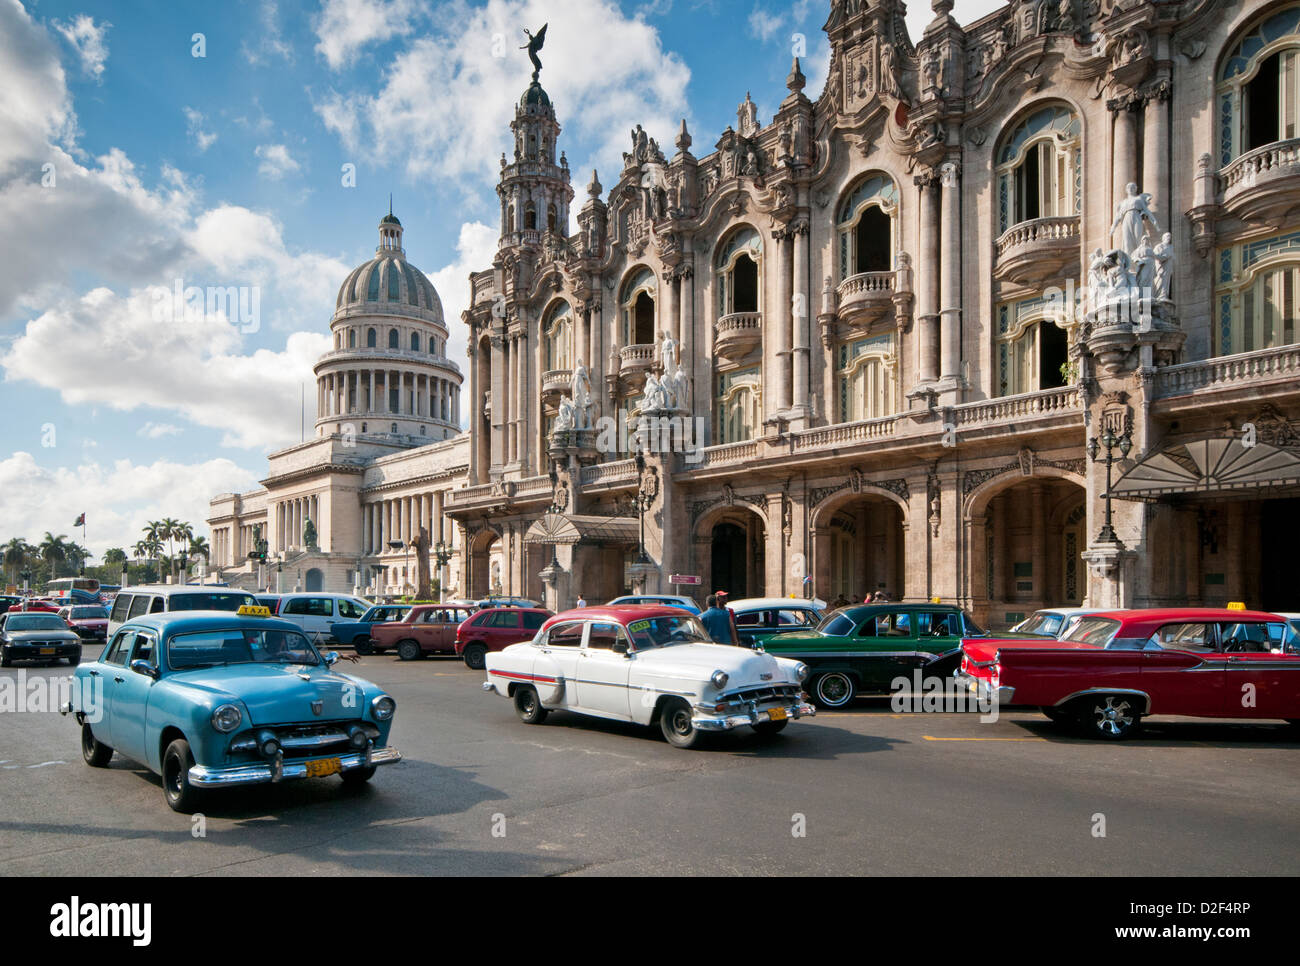 Classic 1950 voiture américaine passant le Capitolio Building et Gran Teatro de la Habana, Paseo de Marti, La Havane, Cuba Banque D'Images